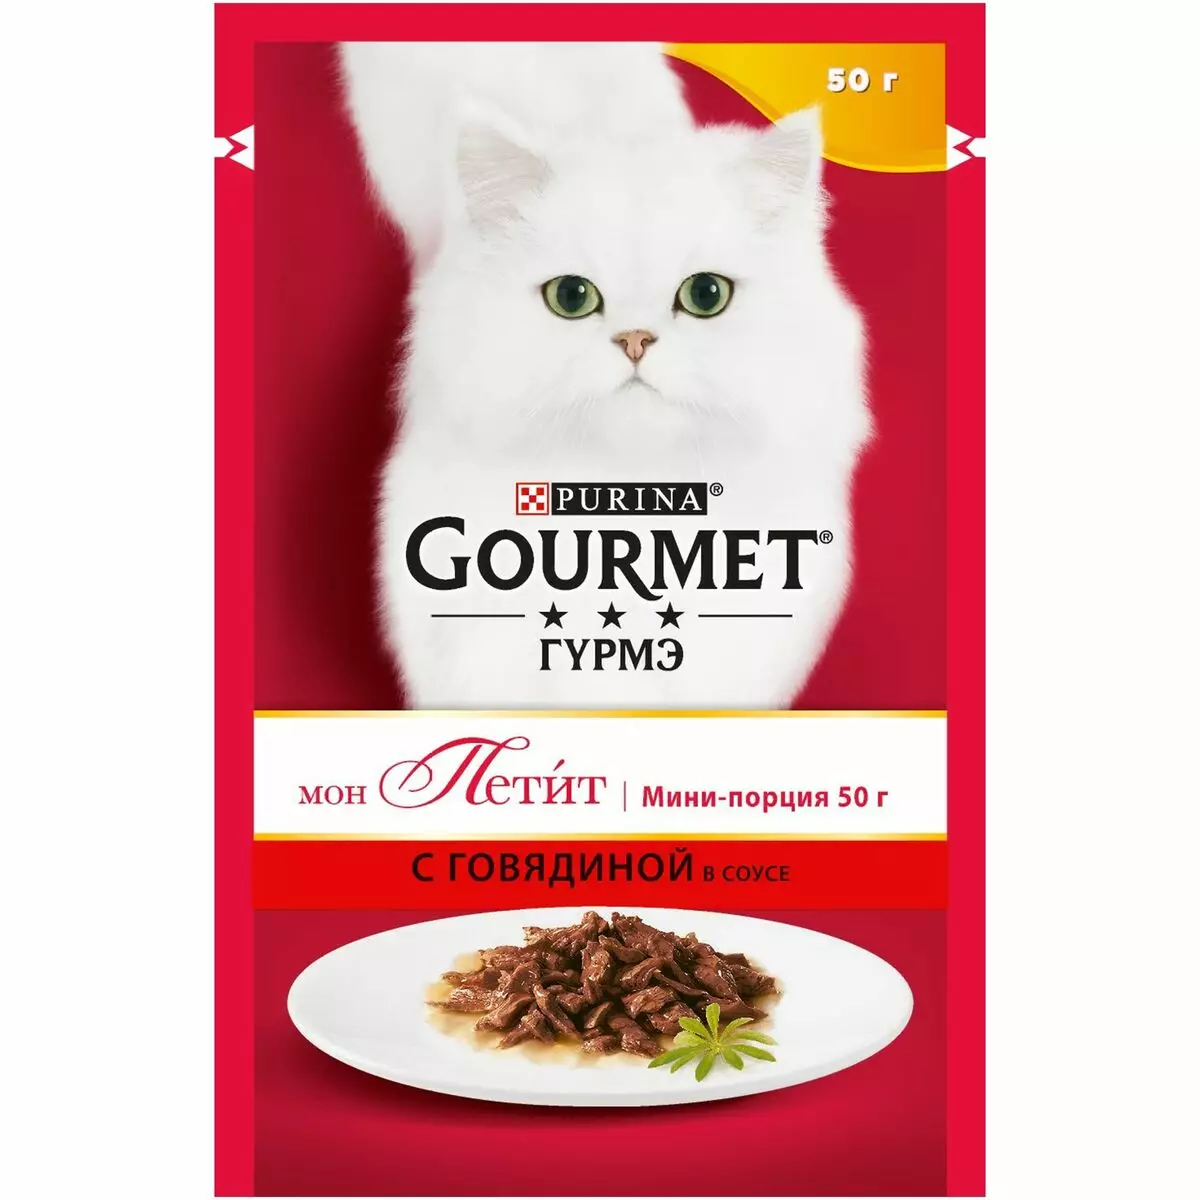 Gourmet: Cat Feed ug Purina Kittens, basa nga mga pates ug uban pang mga feline de lata nga pagkaon, ilang komposisyon, mga review 22711_39